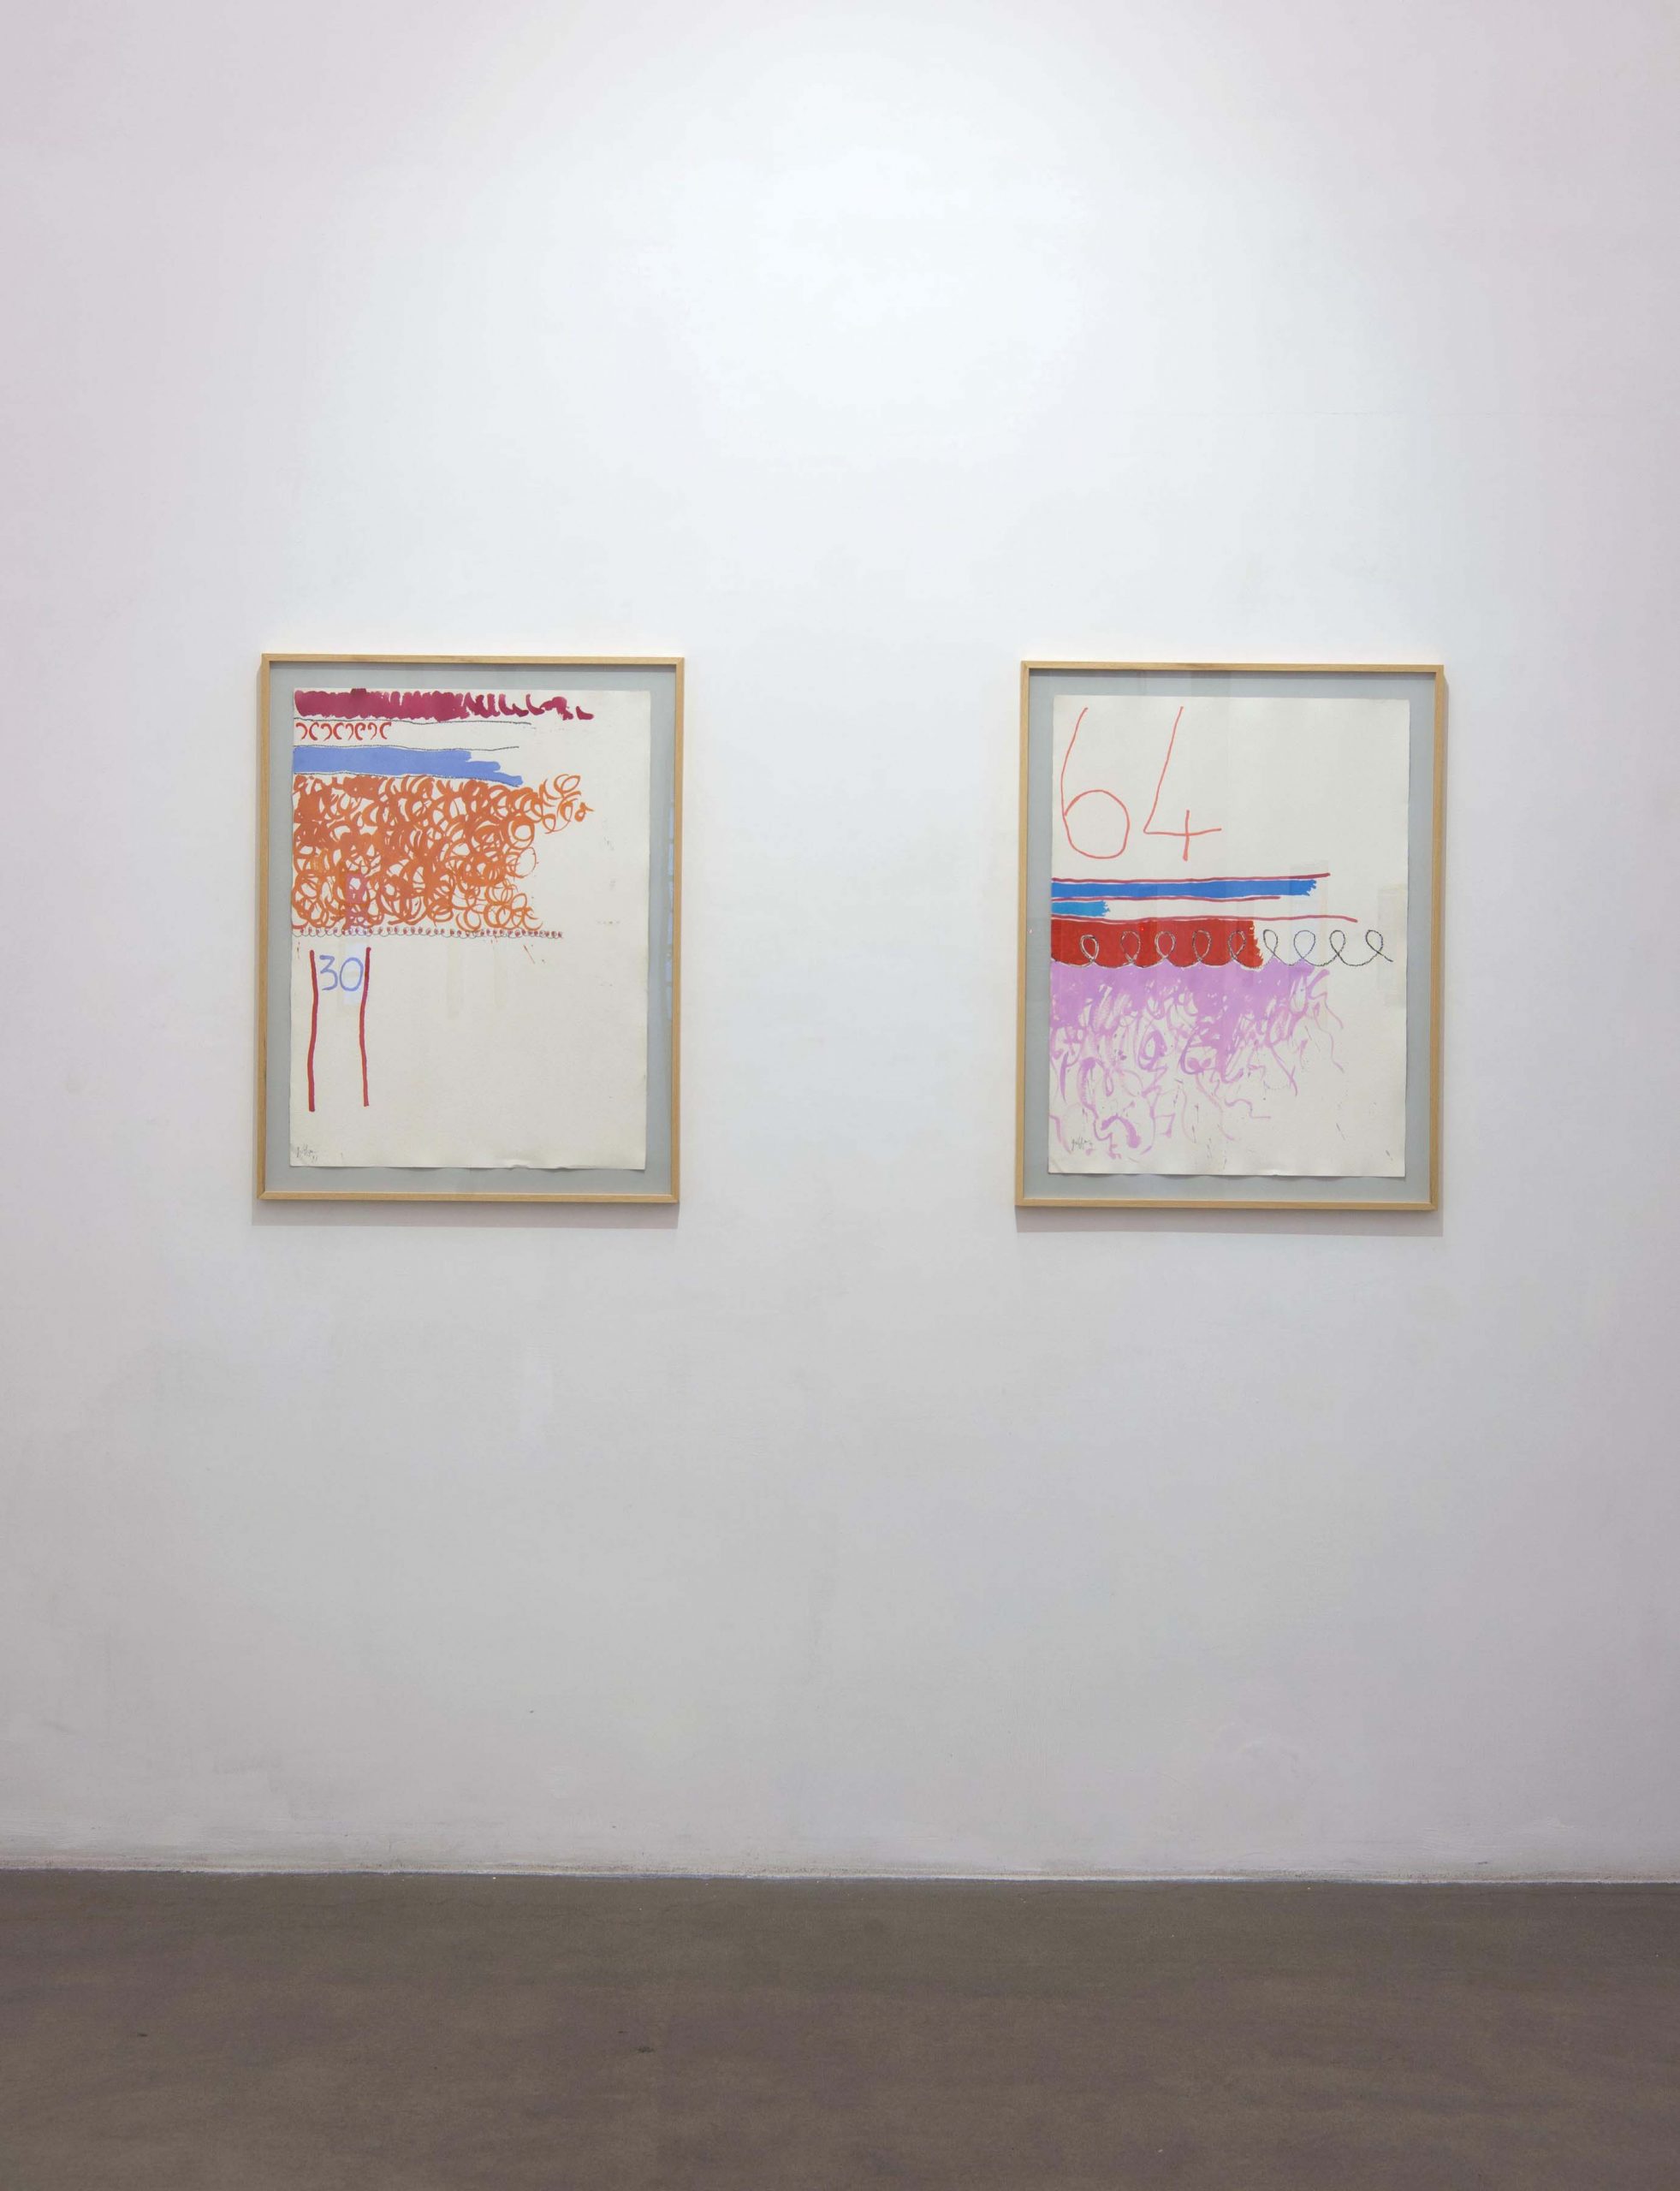 13. Giorgio Griffa: Works on Paper
Installation view, Roma, 2014, foto Giorgio Benni